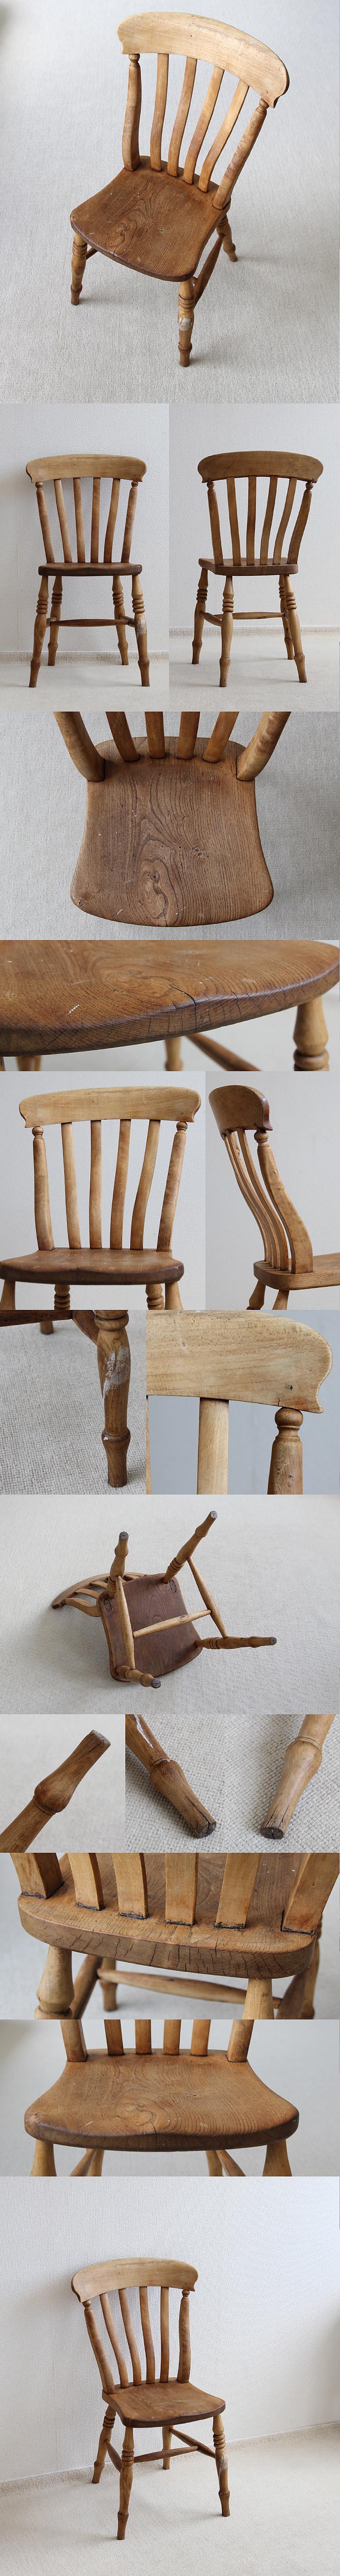 イギリス アンティーク ラスバックチェア 木製椅子 無垢材 英国 家具 